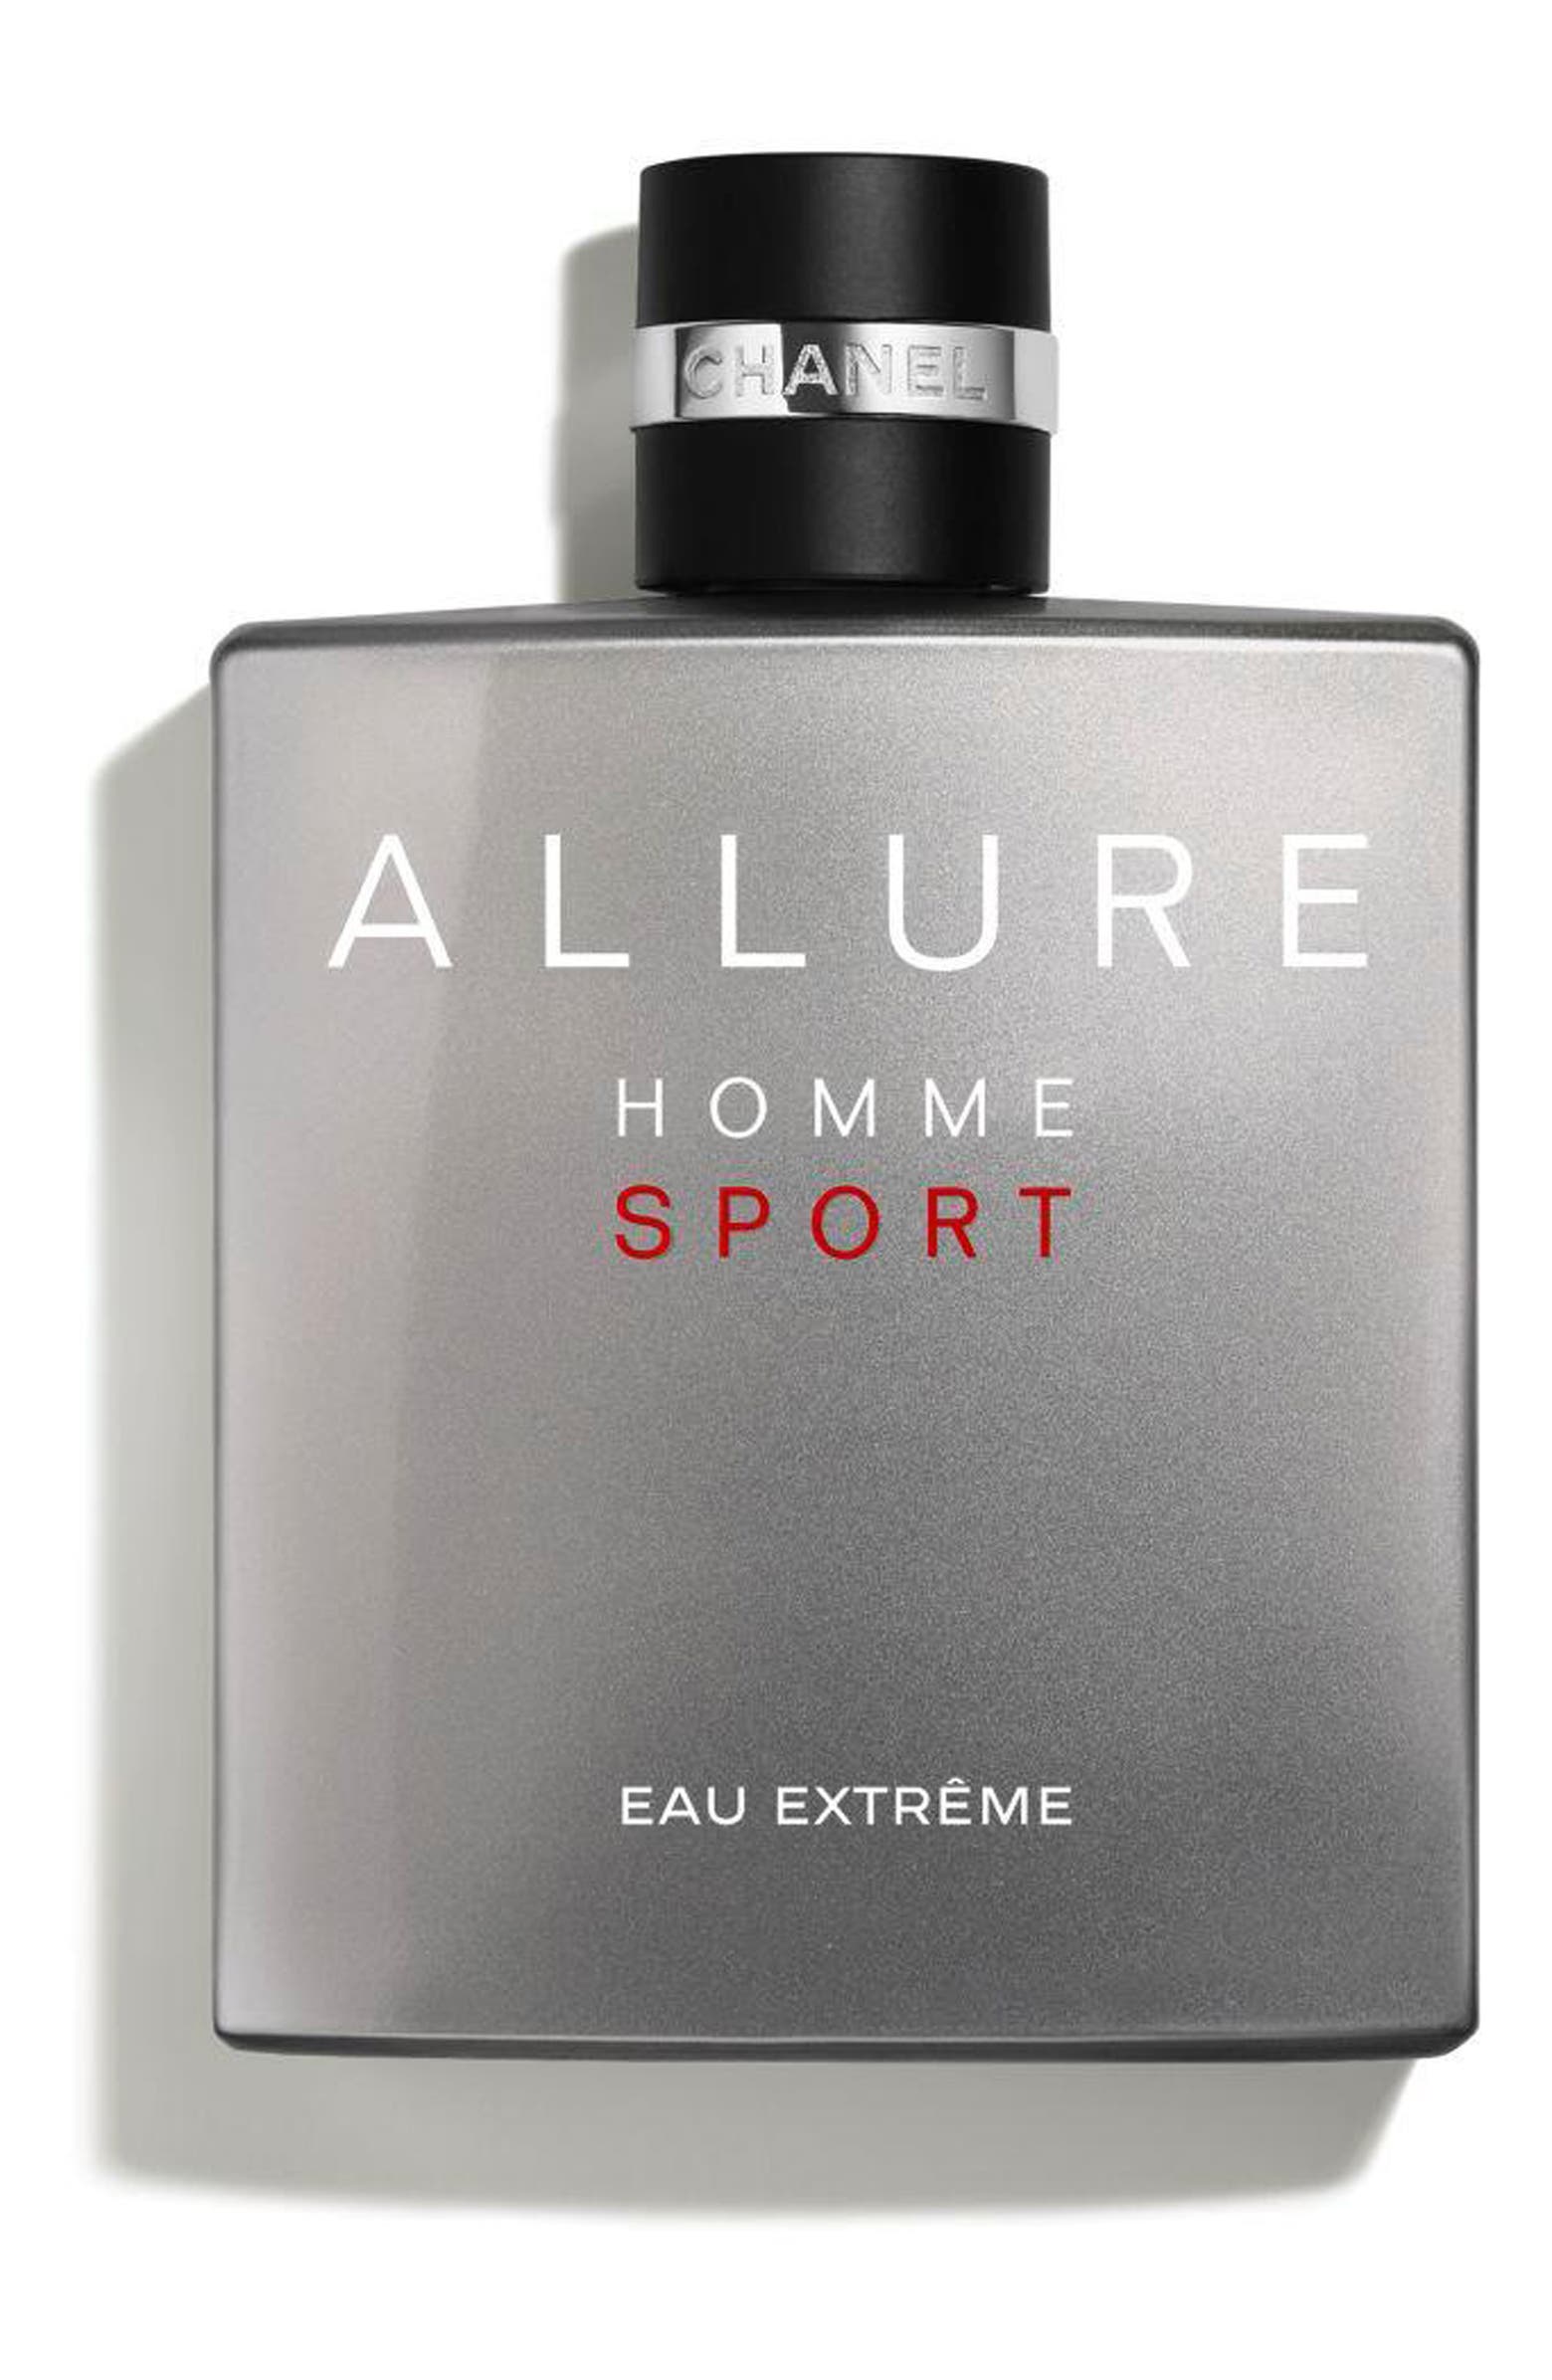 CHANEL ALLURE HOMME SPORT EAU EXTREME Eau de Parfum | Nordstrom